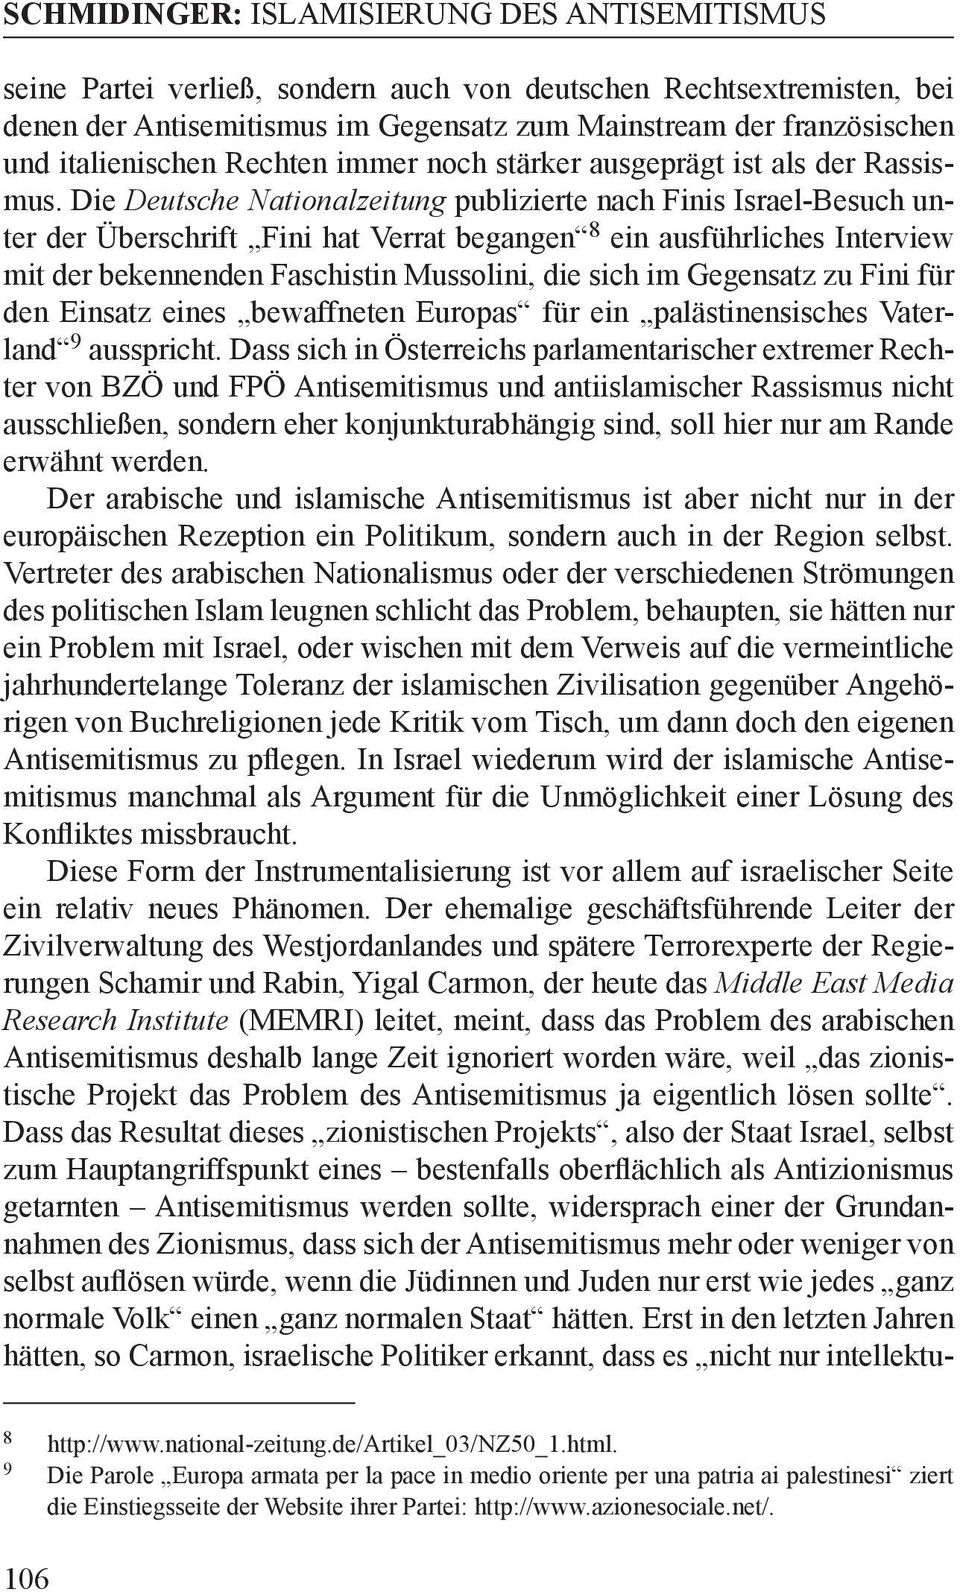 Die Deutsche Nationalzeitung publizierte nach Finis Israel-Besuch unter der Überschrift Fini hat Verrat begangen 8 ein ausführliches Interview mit der bekennenden Faschistin Mussolini, die sich im